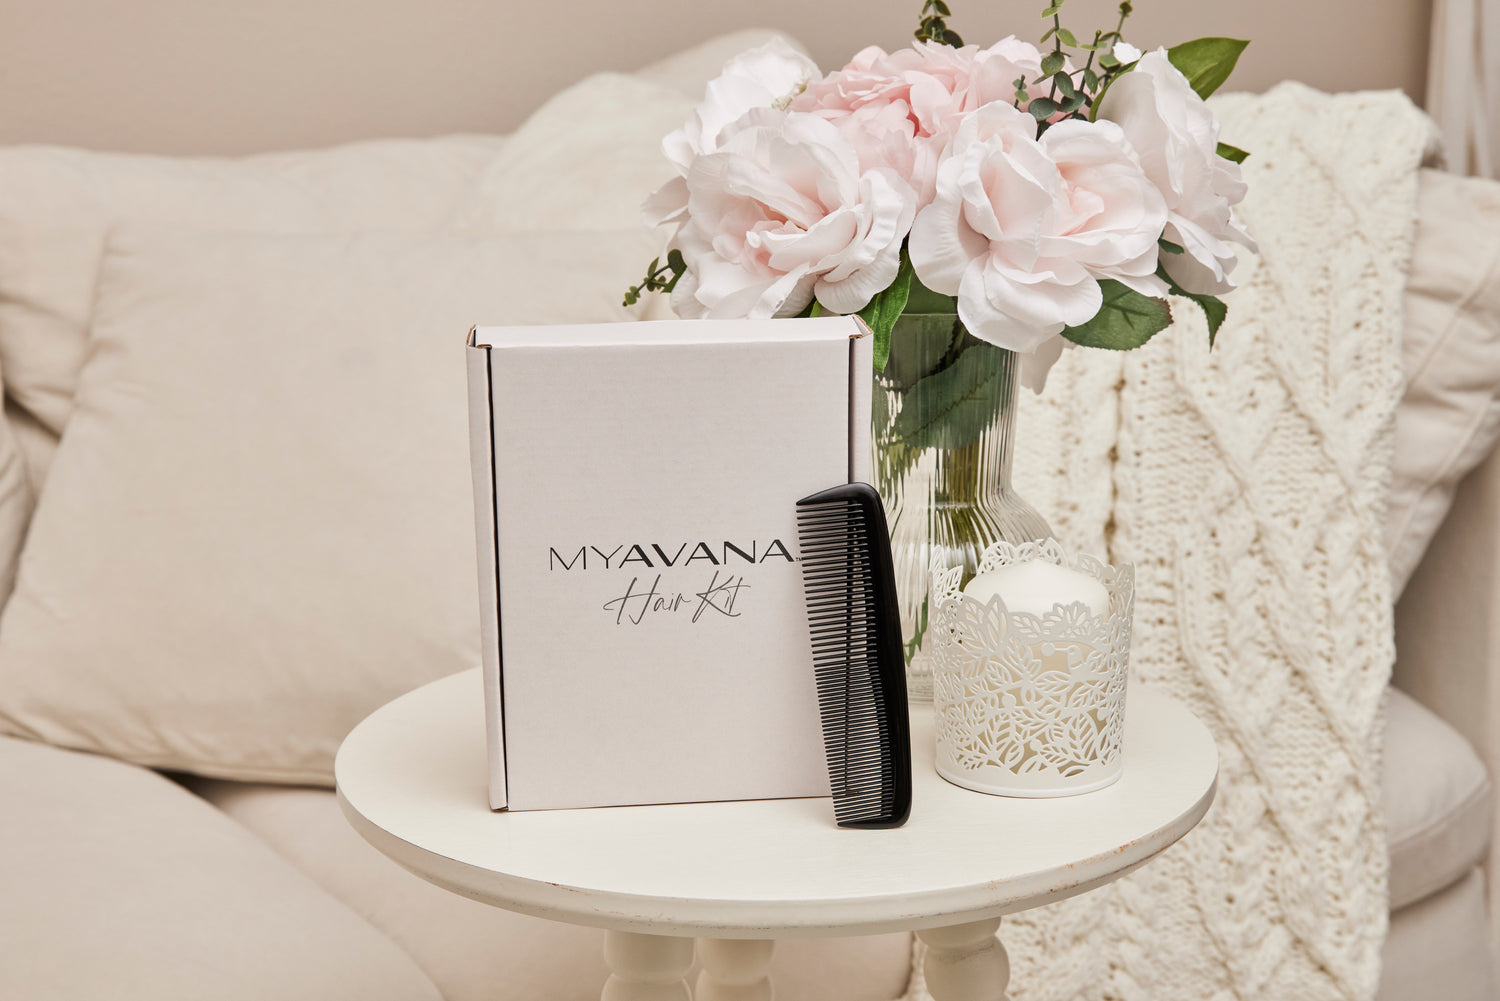 MYAVANA Hair Analysis Kit